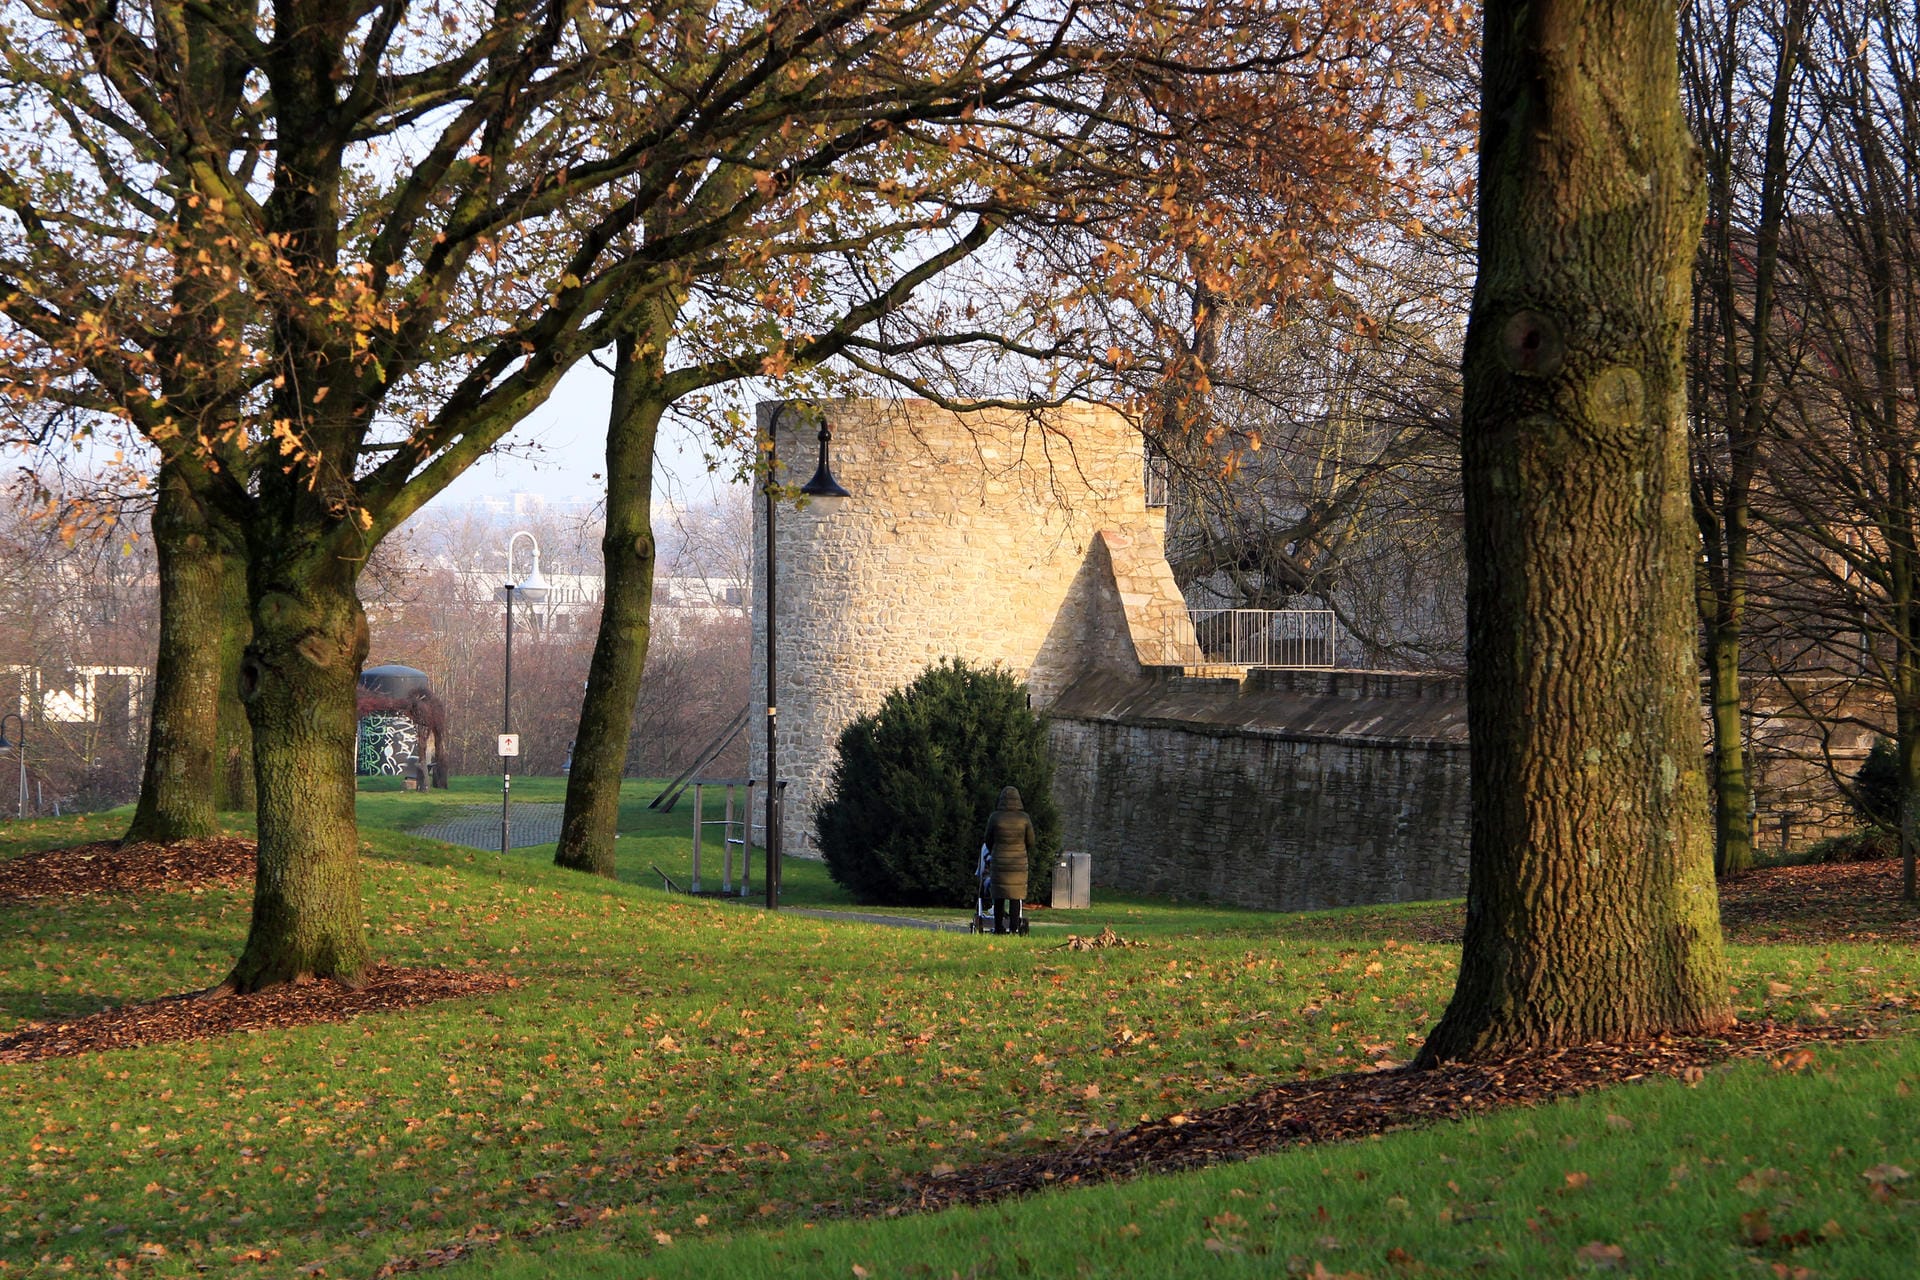 Wehrhafte Mauern: kolossaler Rundturm von Schloss Broich in Mülheim an der Ruhr.